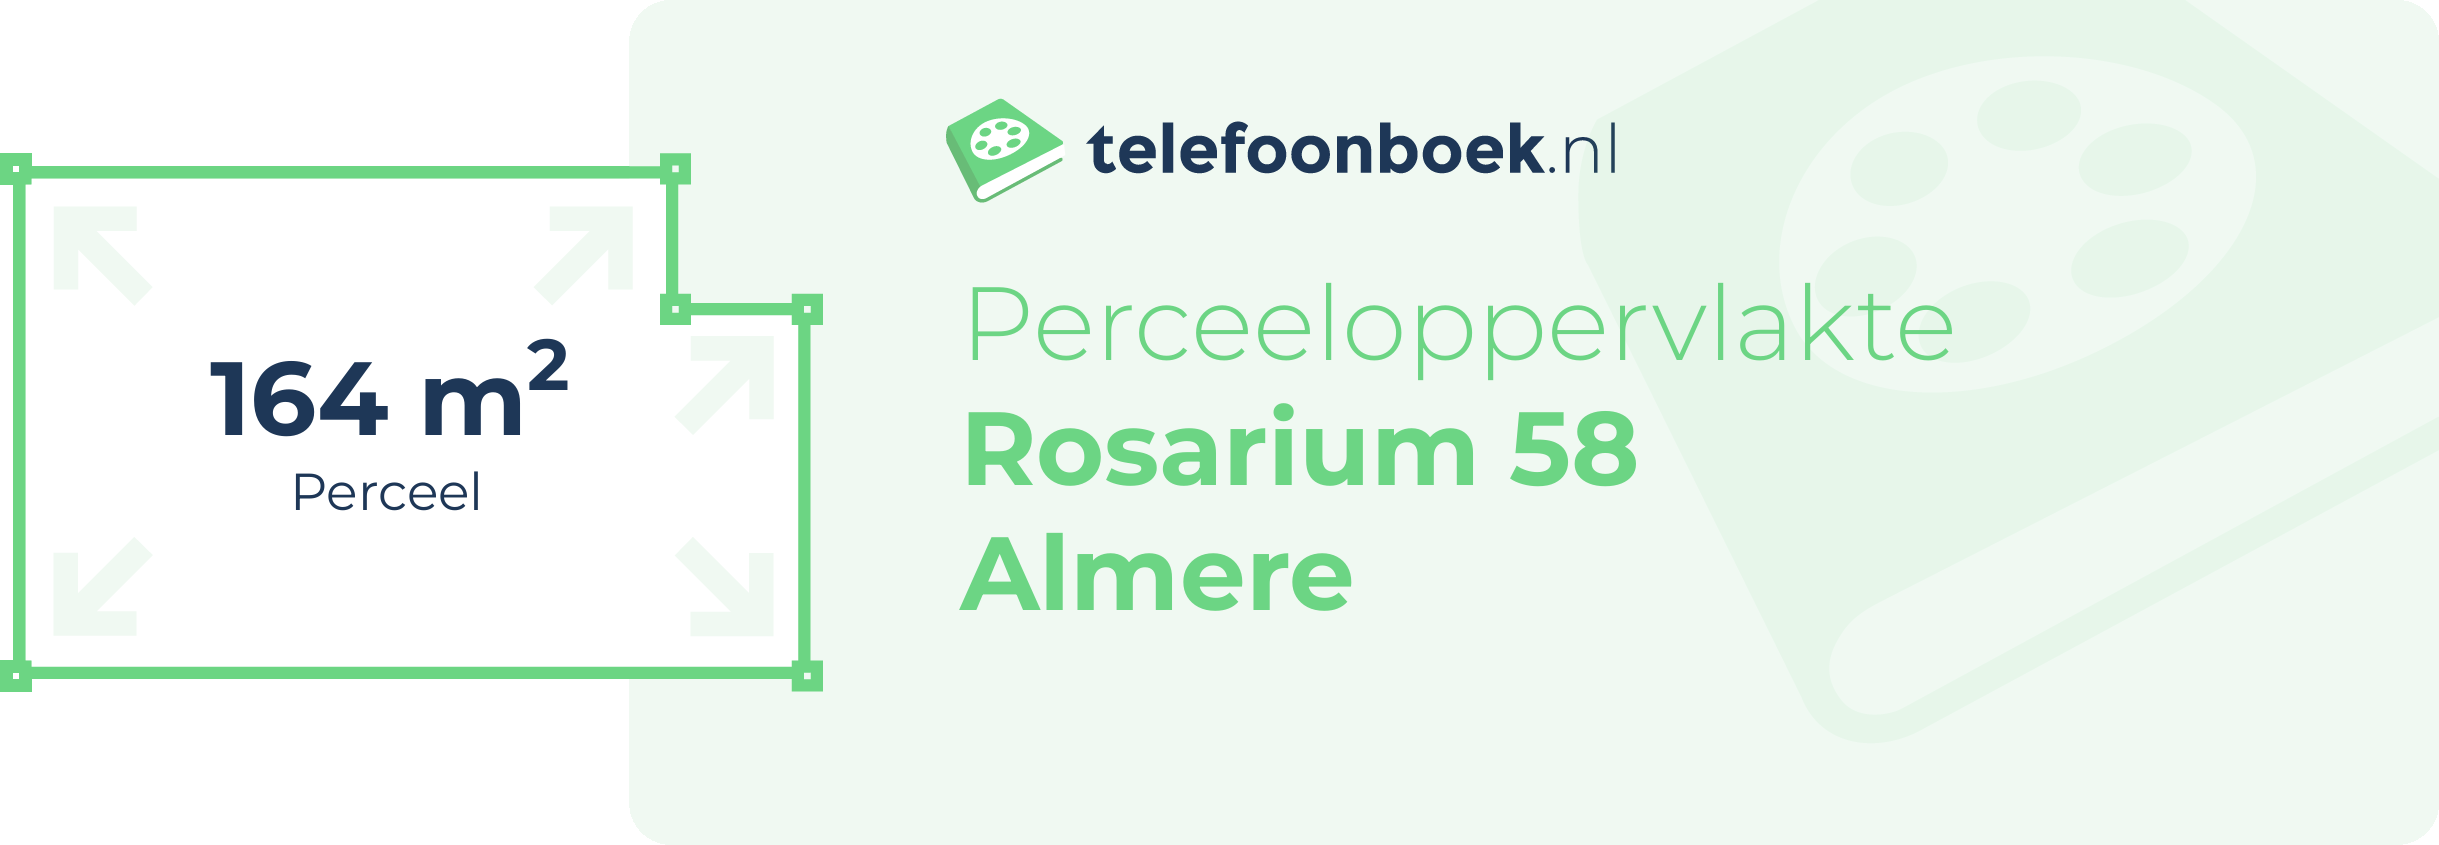 Perceeloppervlakte Rosarium 58 Almere